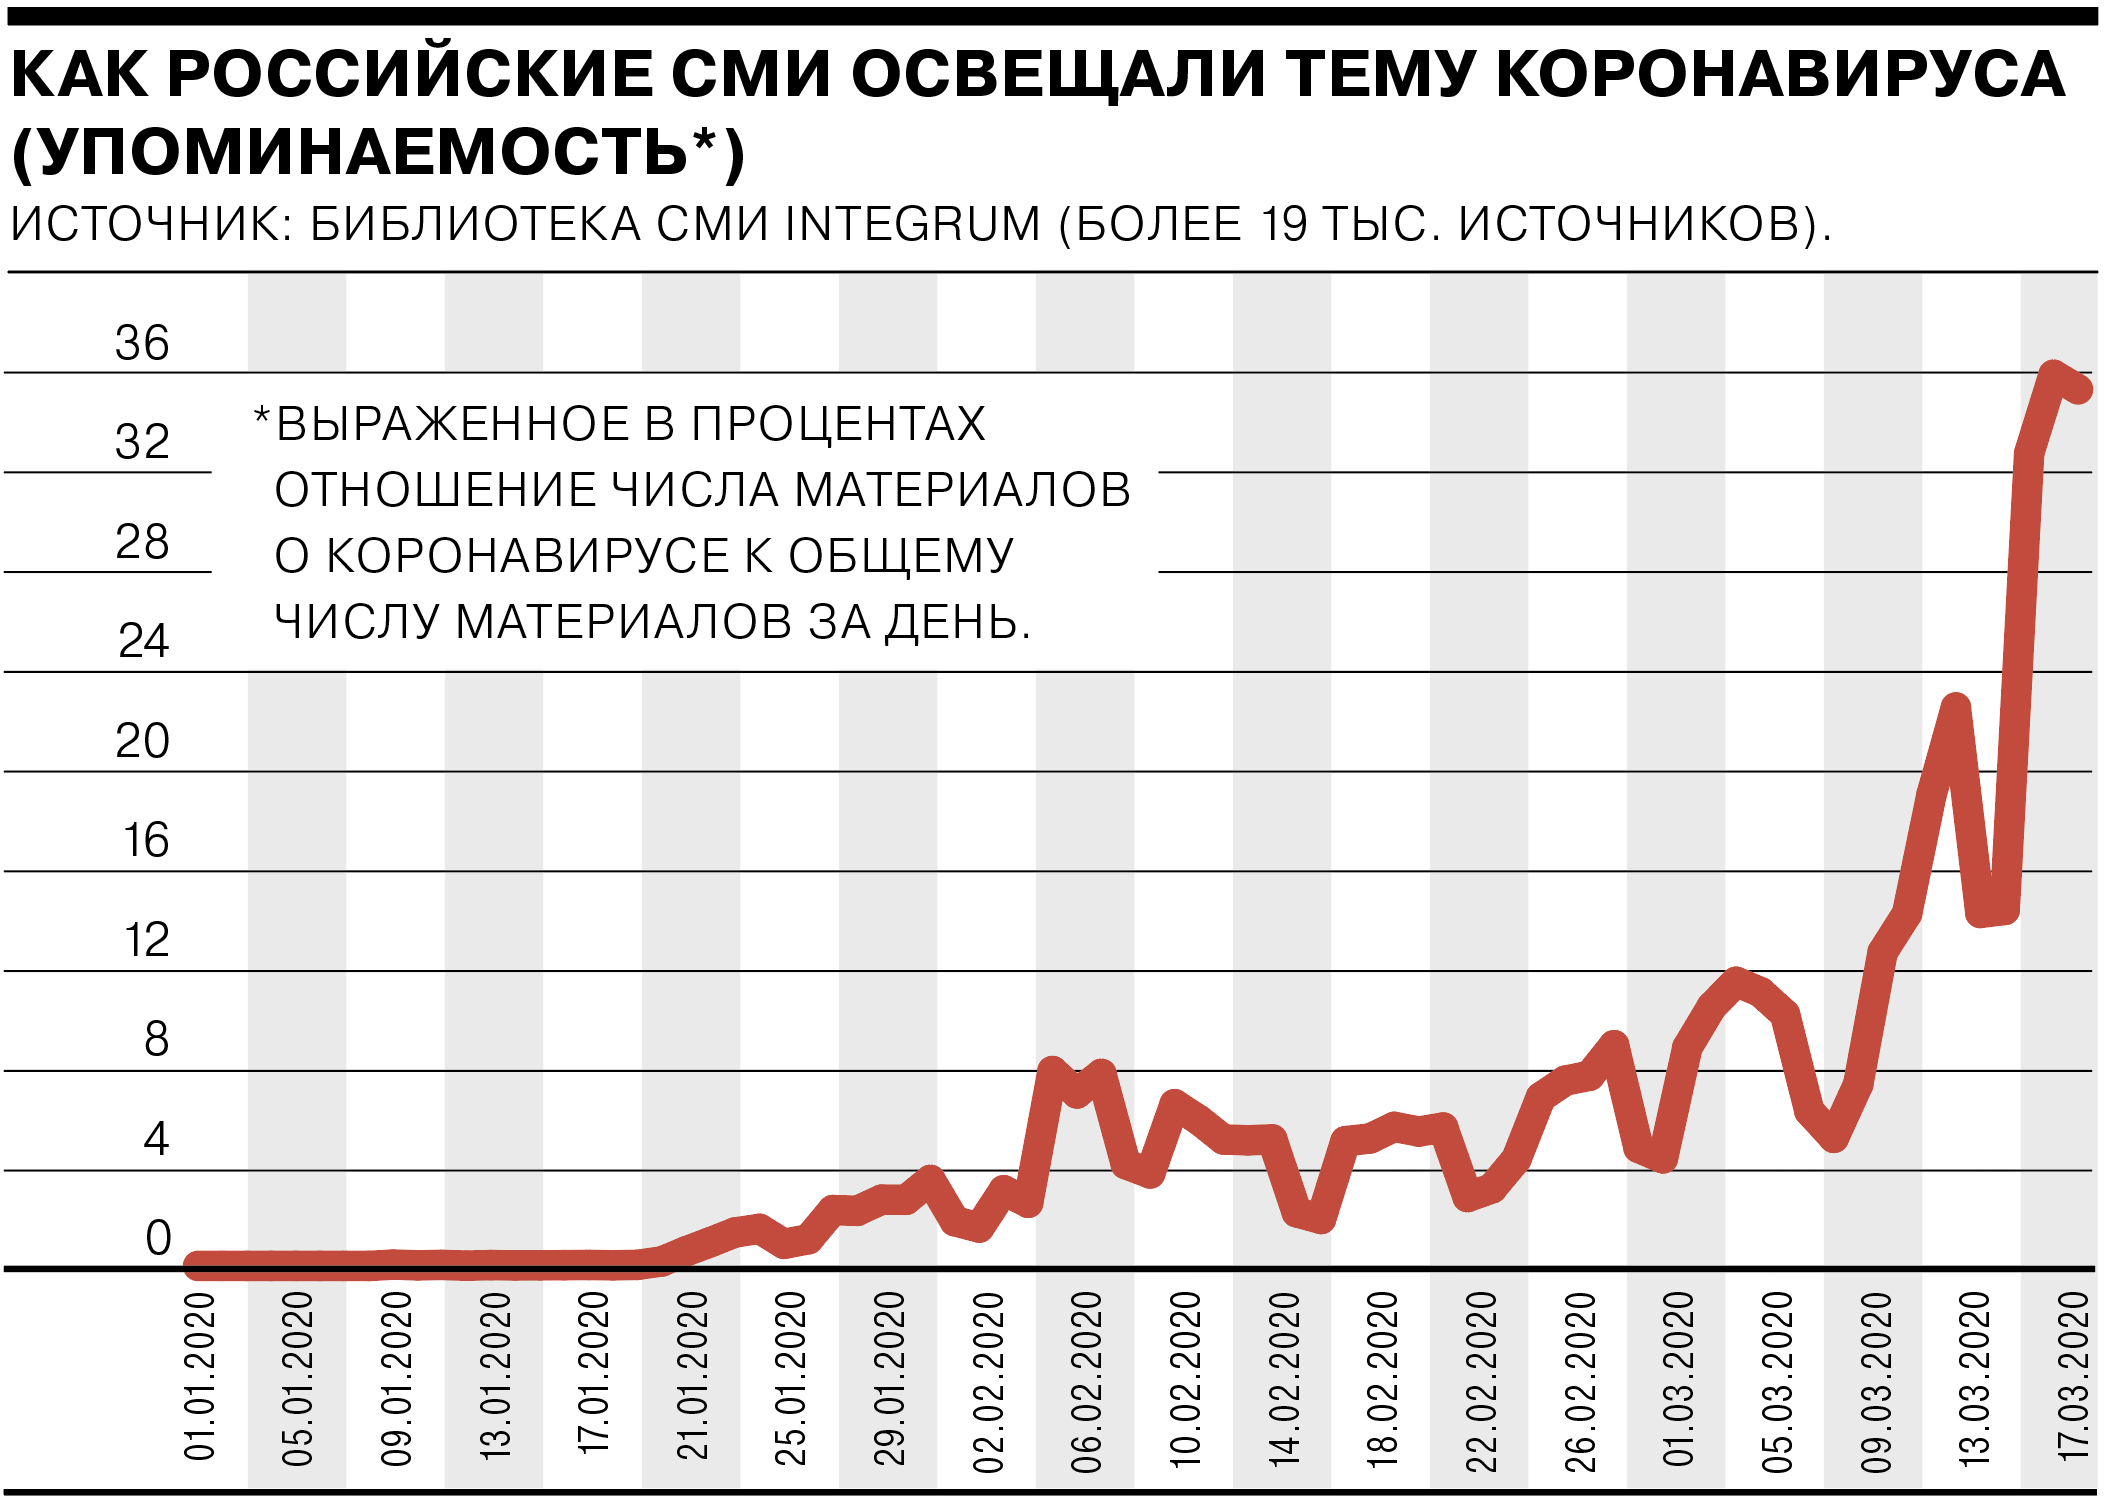 По данным на 23 января, доля публикаций о коронавирусе в федеральных и региональных российских СМИ составляла 2,7%. 12 марта, на следующий день после объявление ВОЗ пандемии, это значение приблизилось к 19%. 18 марта доля превысила 35%.